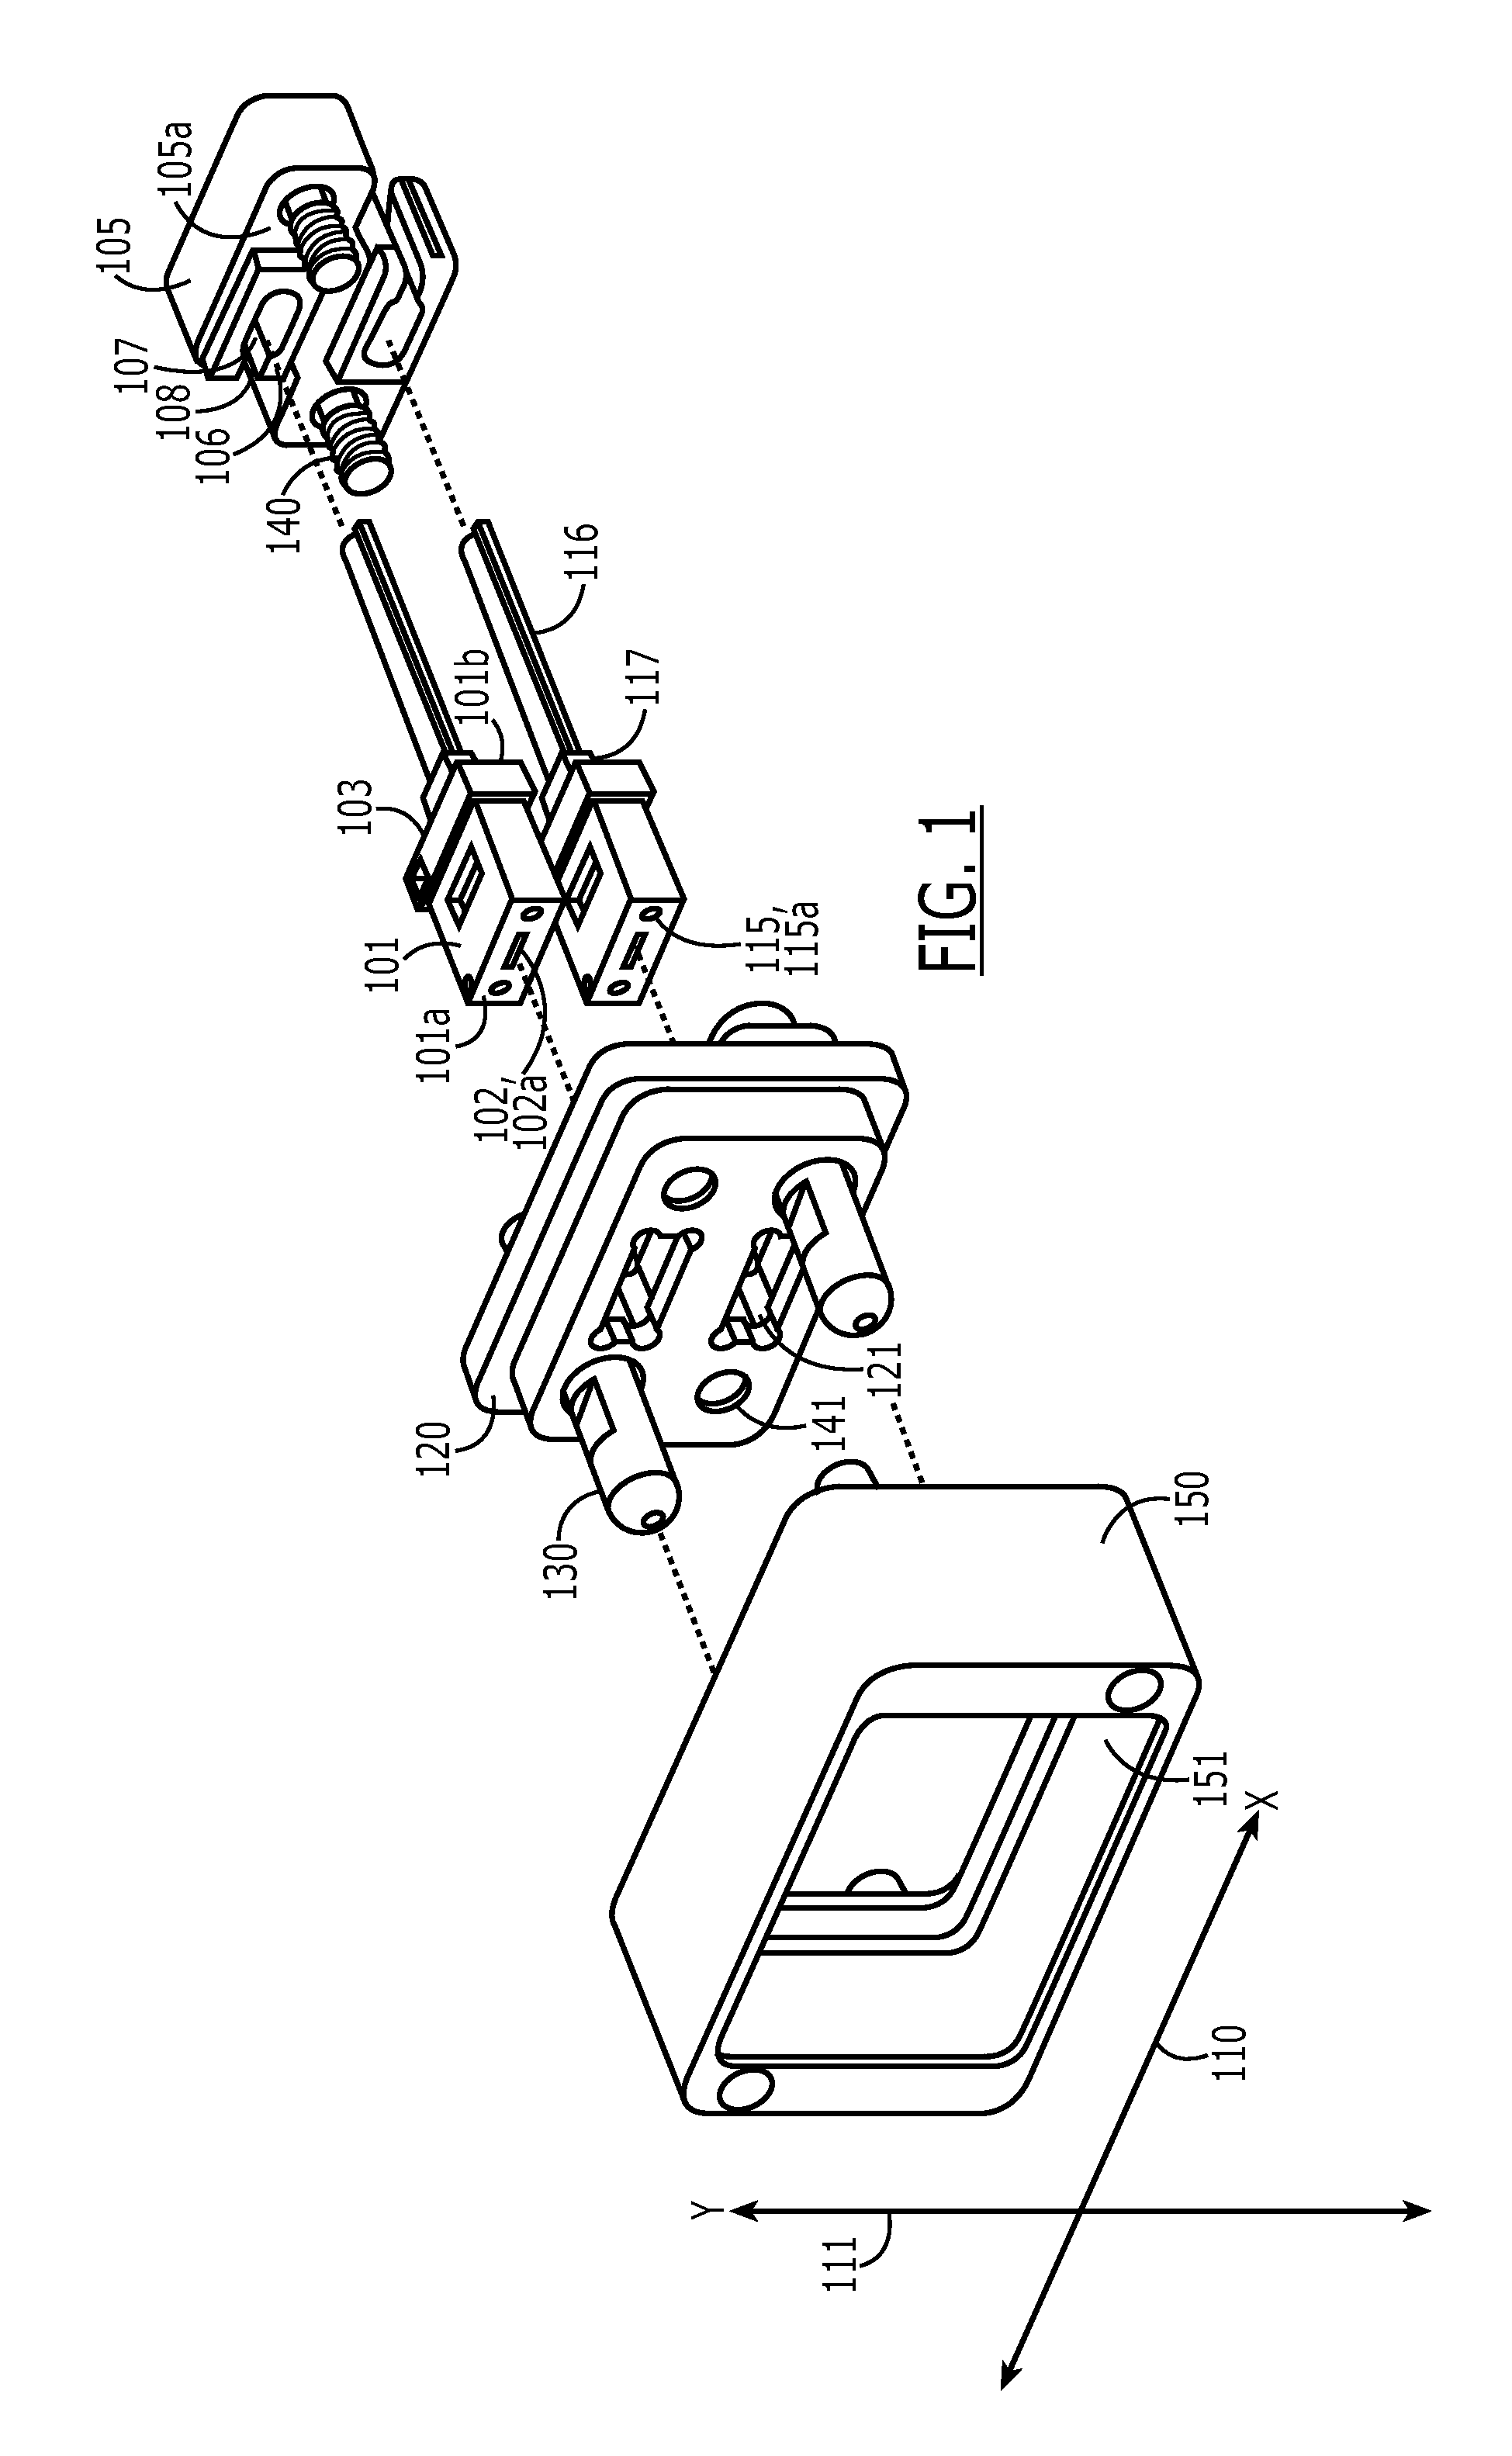 Multi-fiber connector with ferrule float